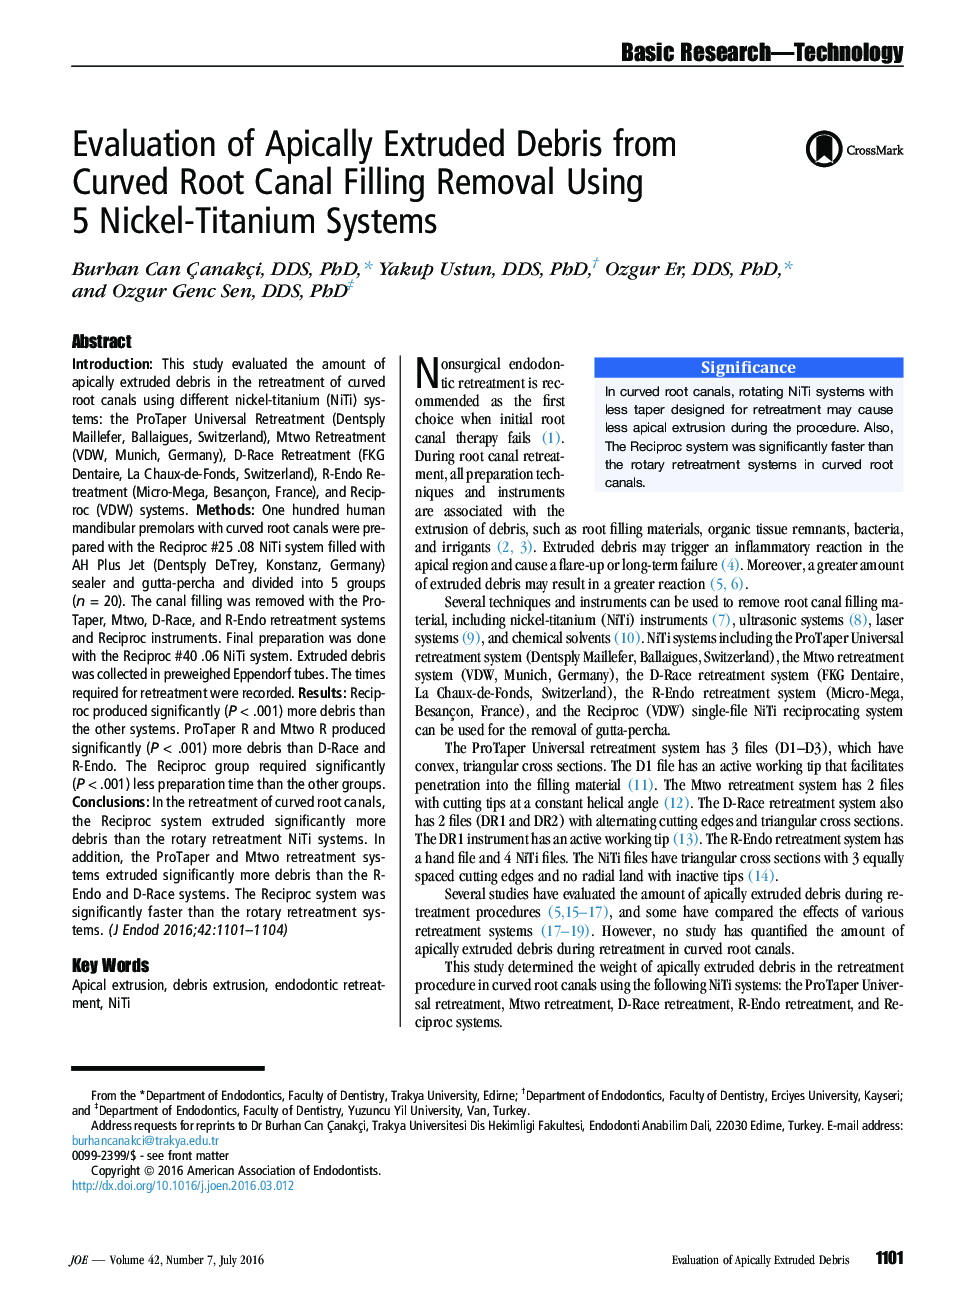 بررسی ضایعات اکسترود شده آپیکال از حذف پرکردن کانال ریشه منحنی با استفاده از 5 سیستم نیکل ـ تیتانیوم